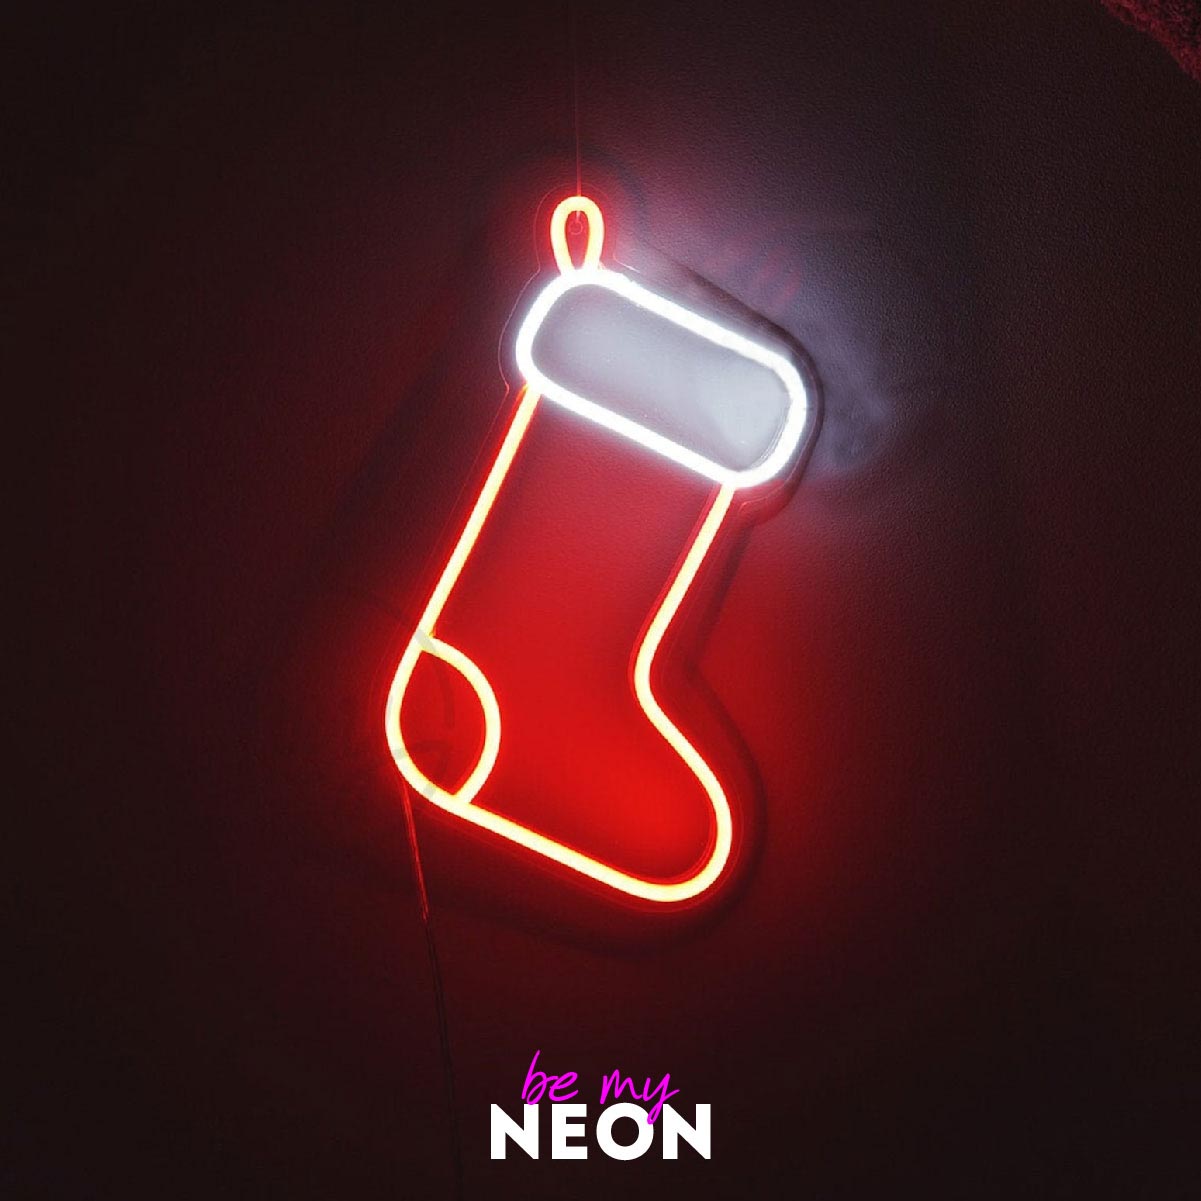 "Weihnachts - Deko" Leuchtmotiv aus LED Neon